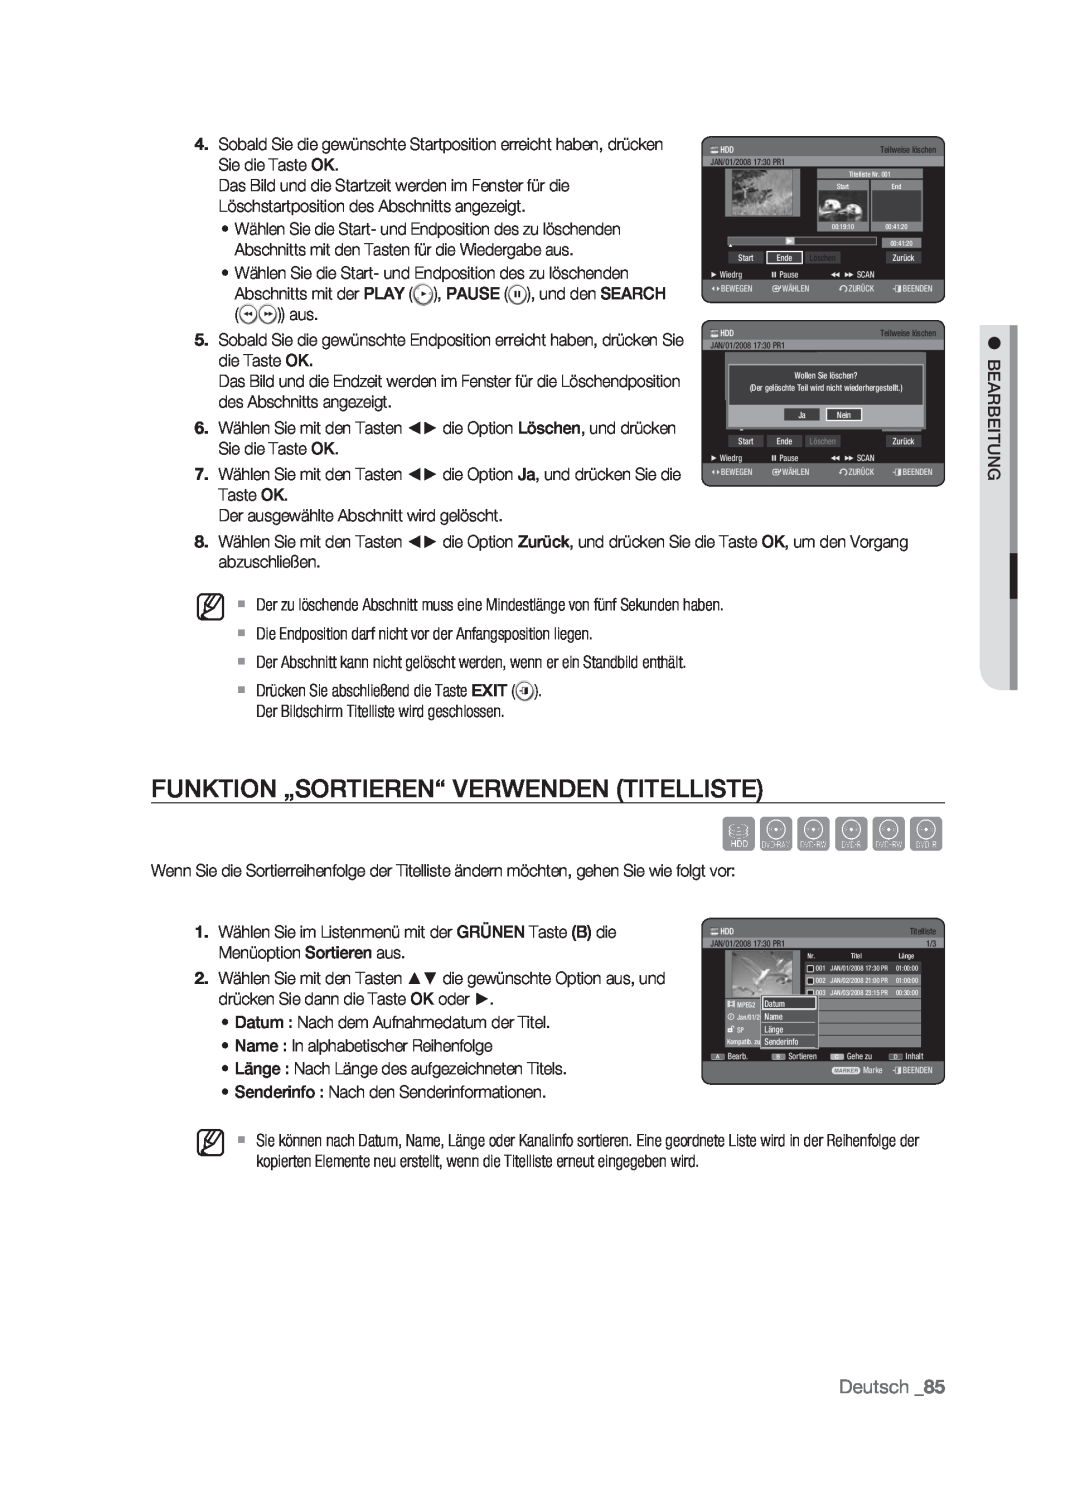 Samsung DVD-HR773/XEB, DVD-HR773/XEN, DVD-HR773/XEG Funktion „Sortieren“ Verwenden Titelliste, Sxcvkl, Deutsch, Löschen 